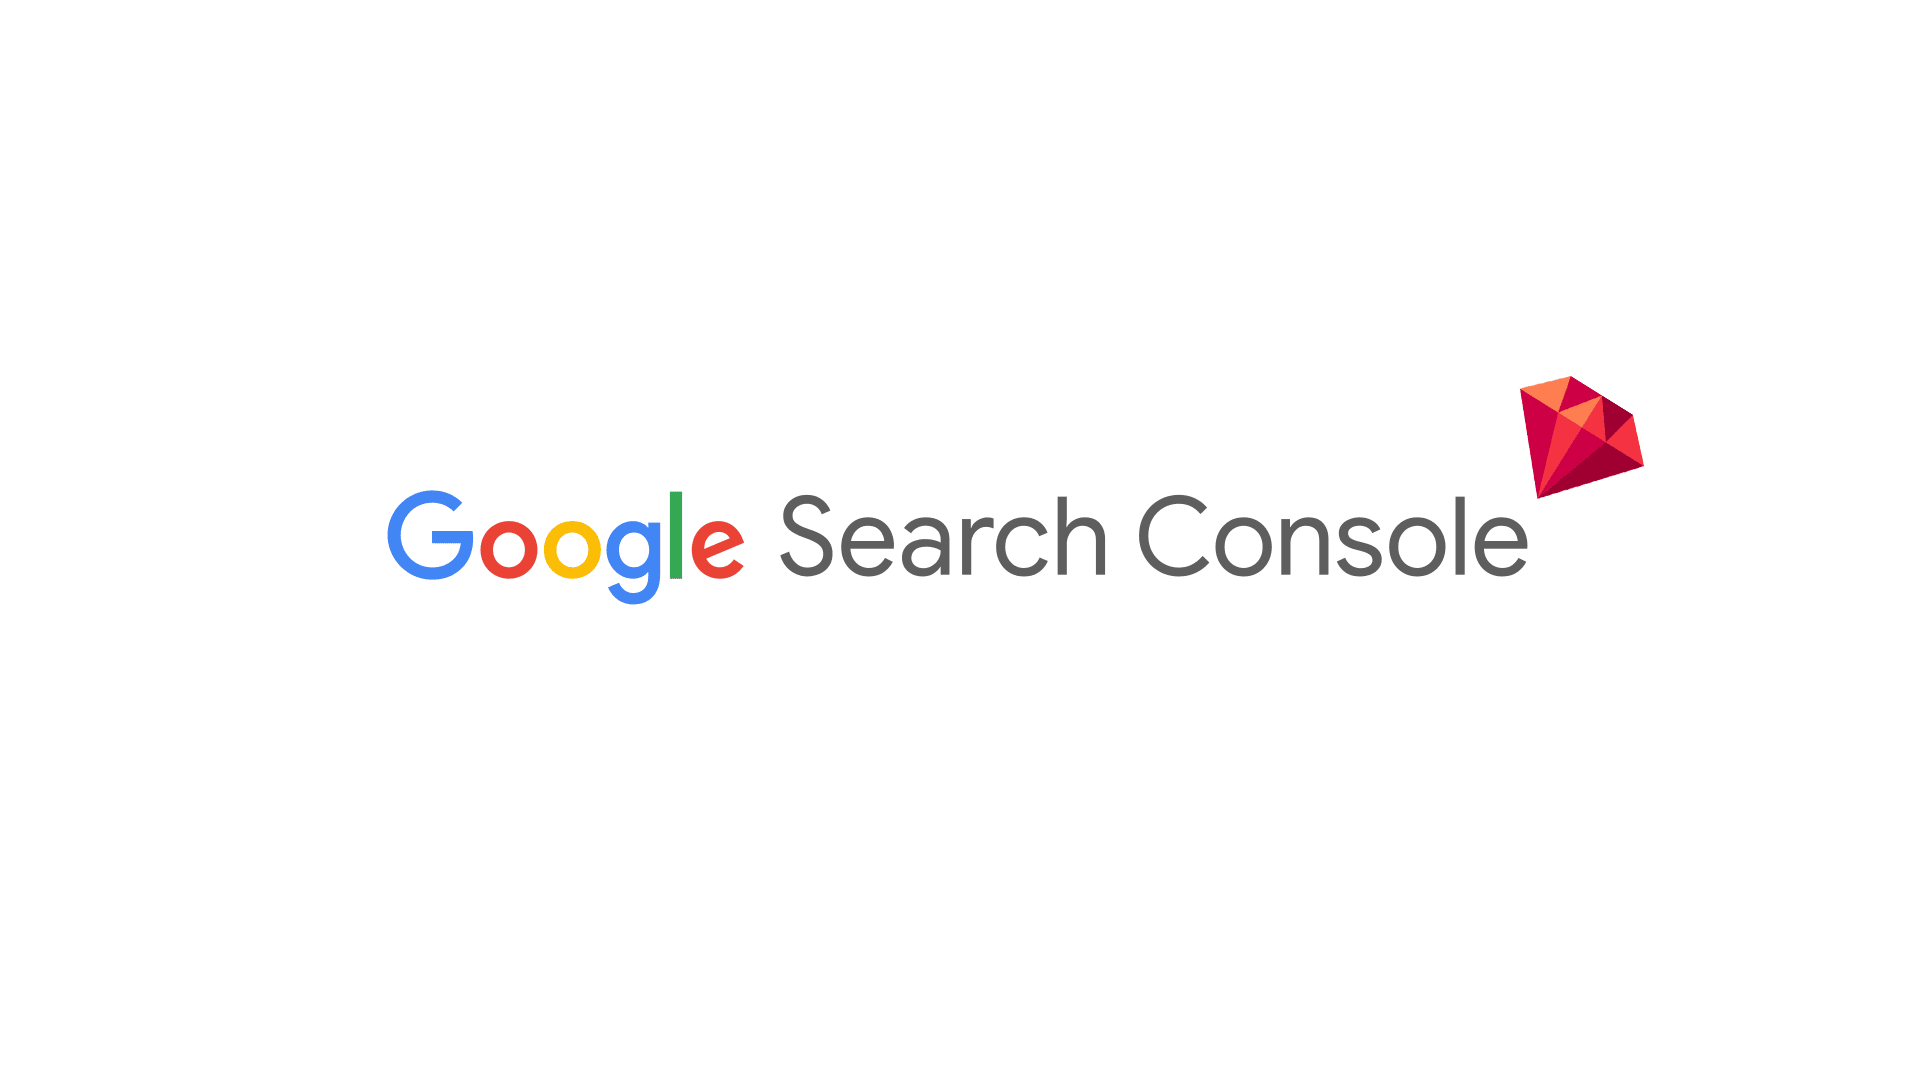 Google Search Console hidden gem!